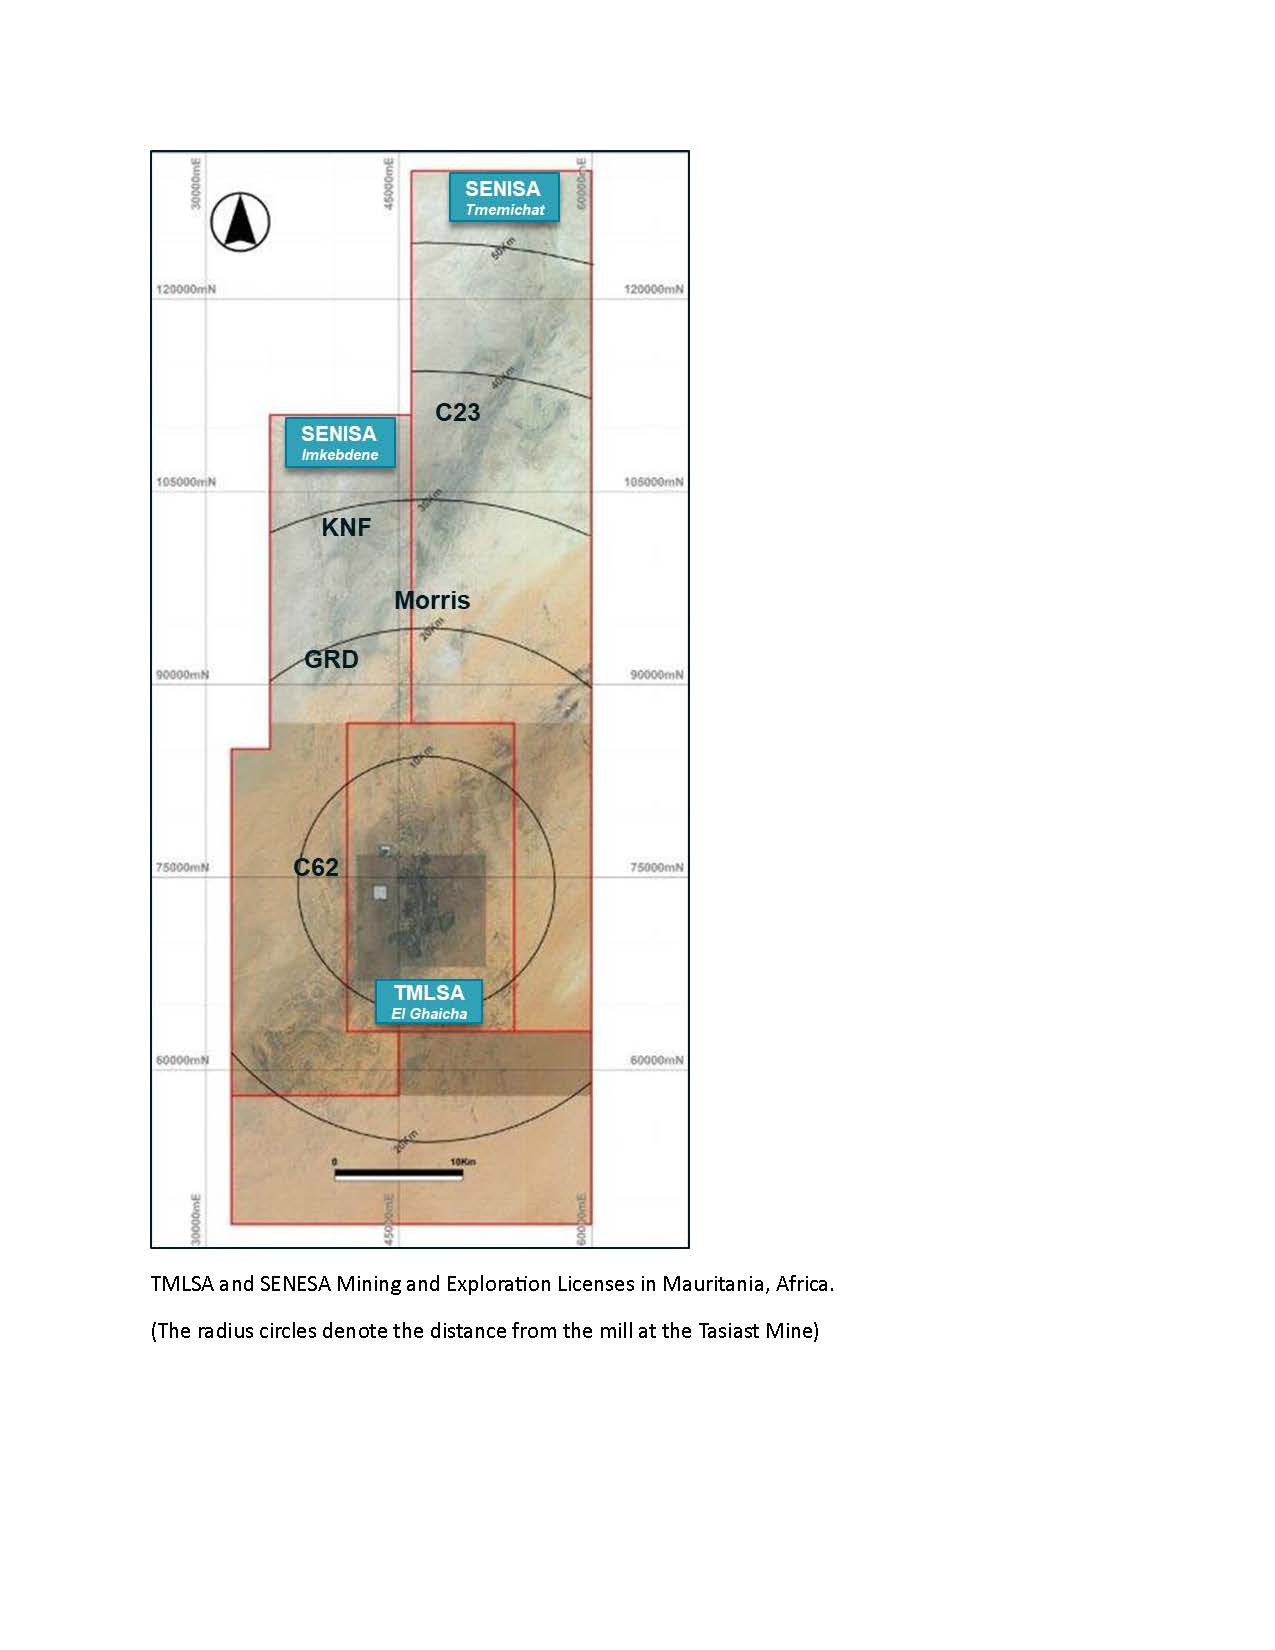 TMLSA and SENESA Mining and Exploration License Map